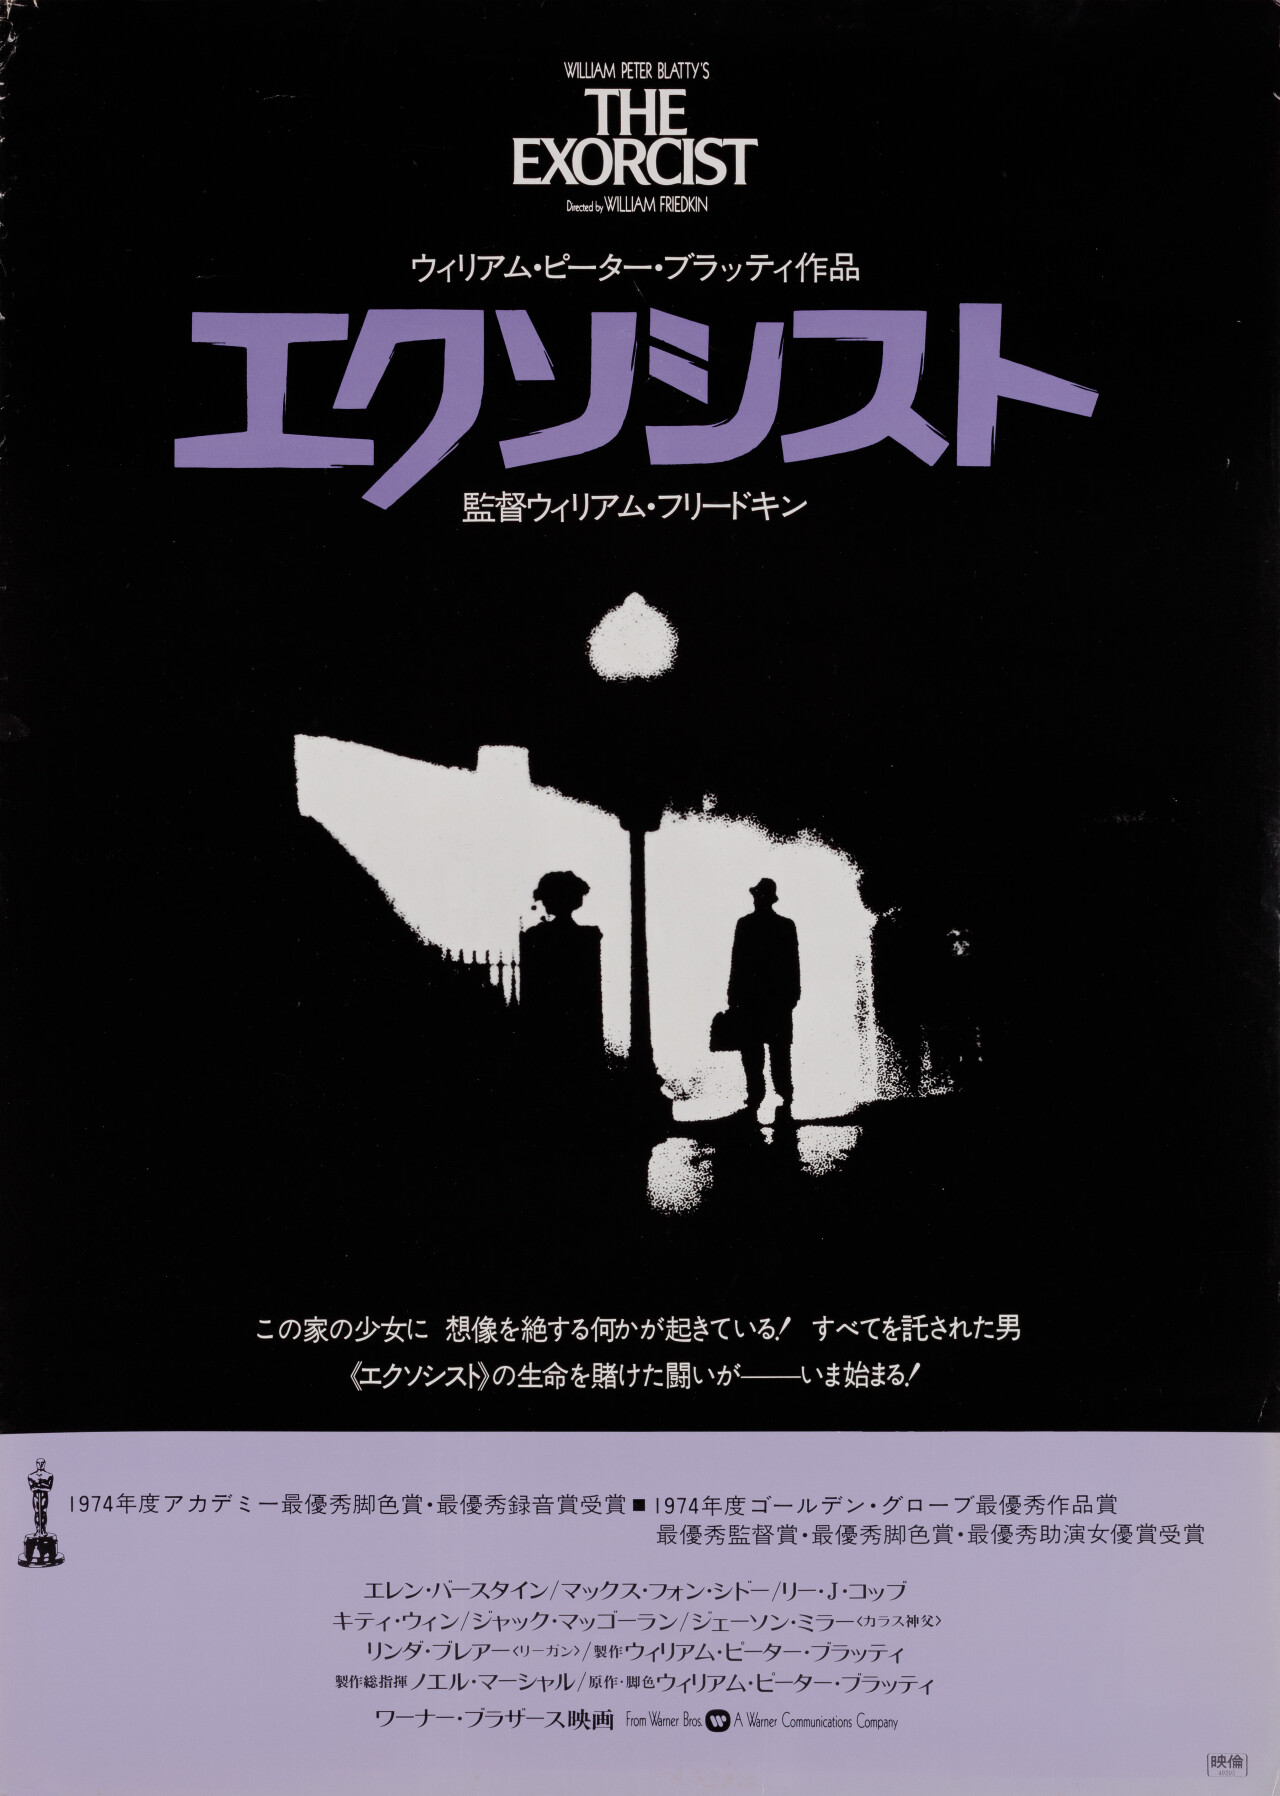 Изгоняющий дьявола (The Exorcist, 1973), режиссёр Уильям Фридкин, японский постер к фильму, автор Билл Голд, Дик Найп (ужасы, 1979 год)